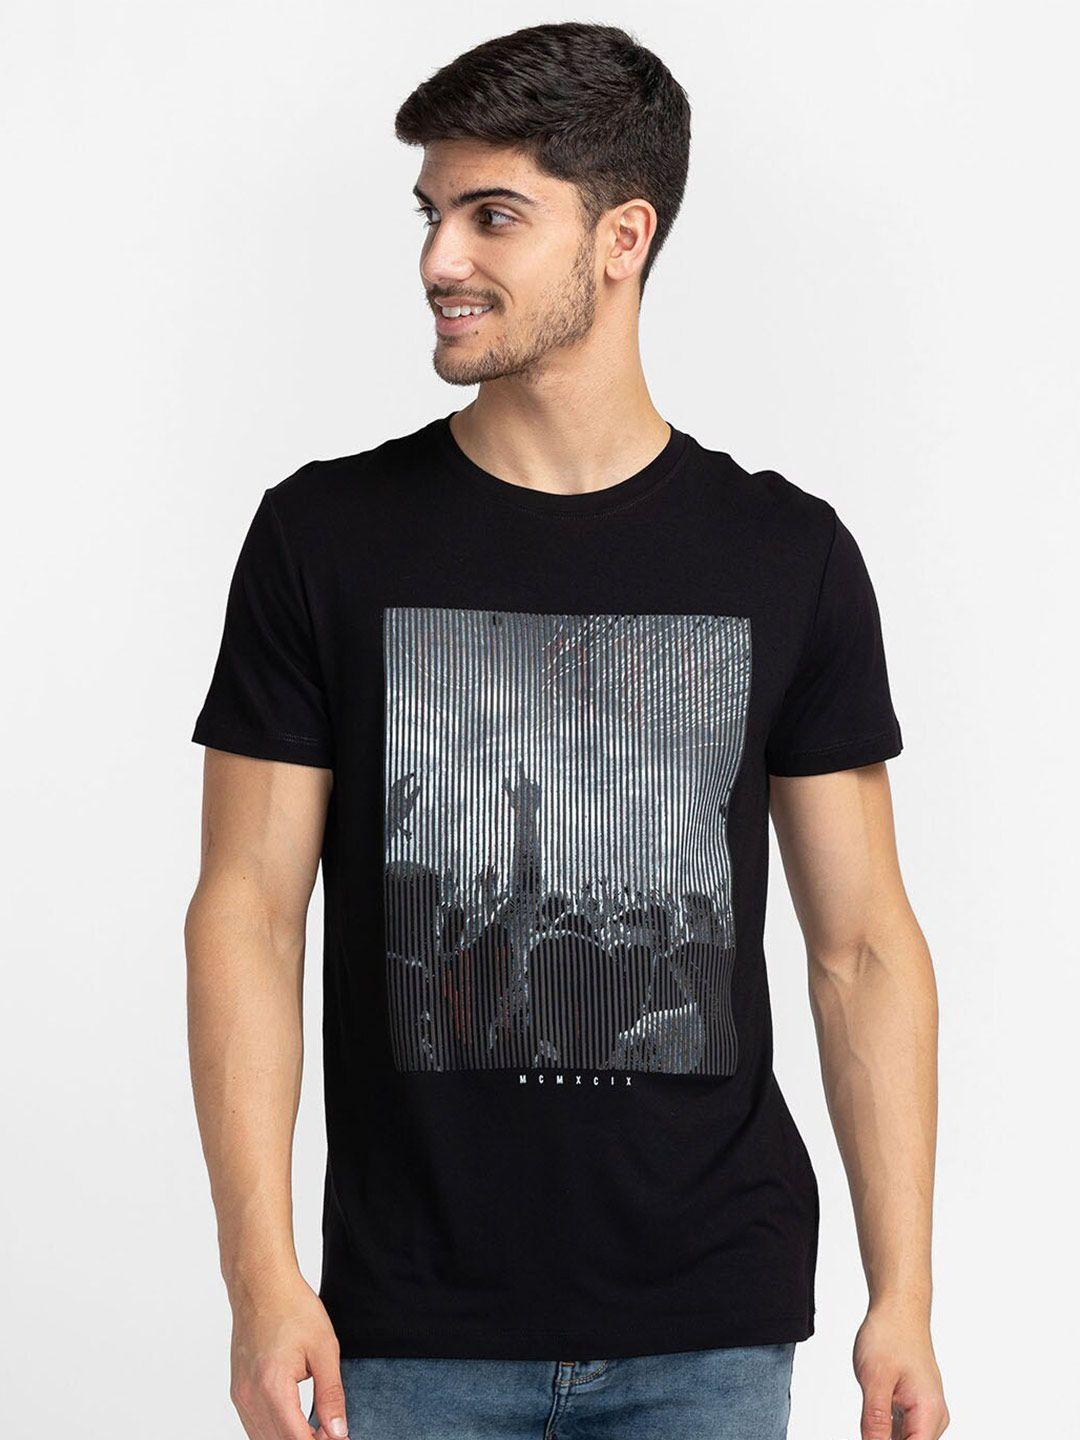 globus men black printed t-shirt